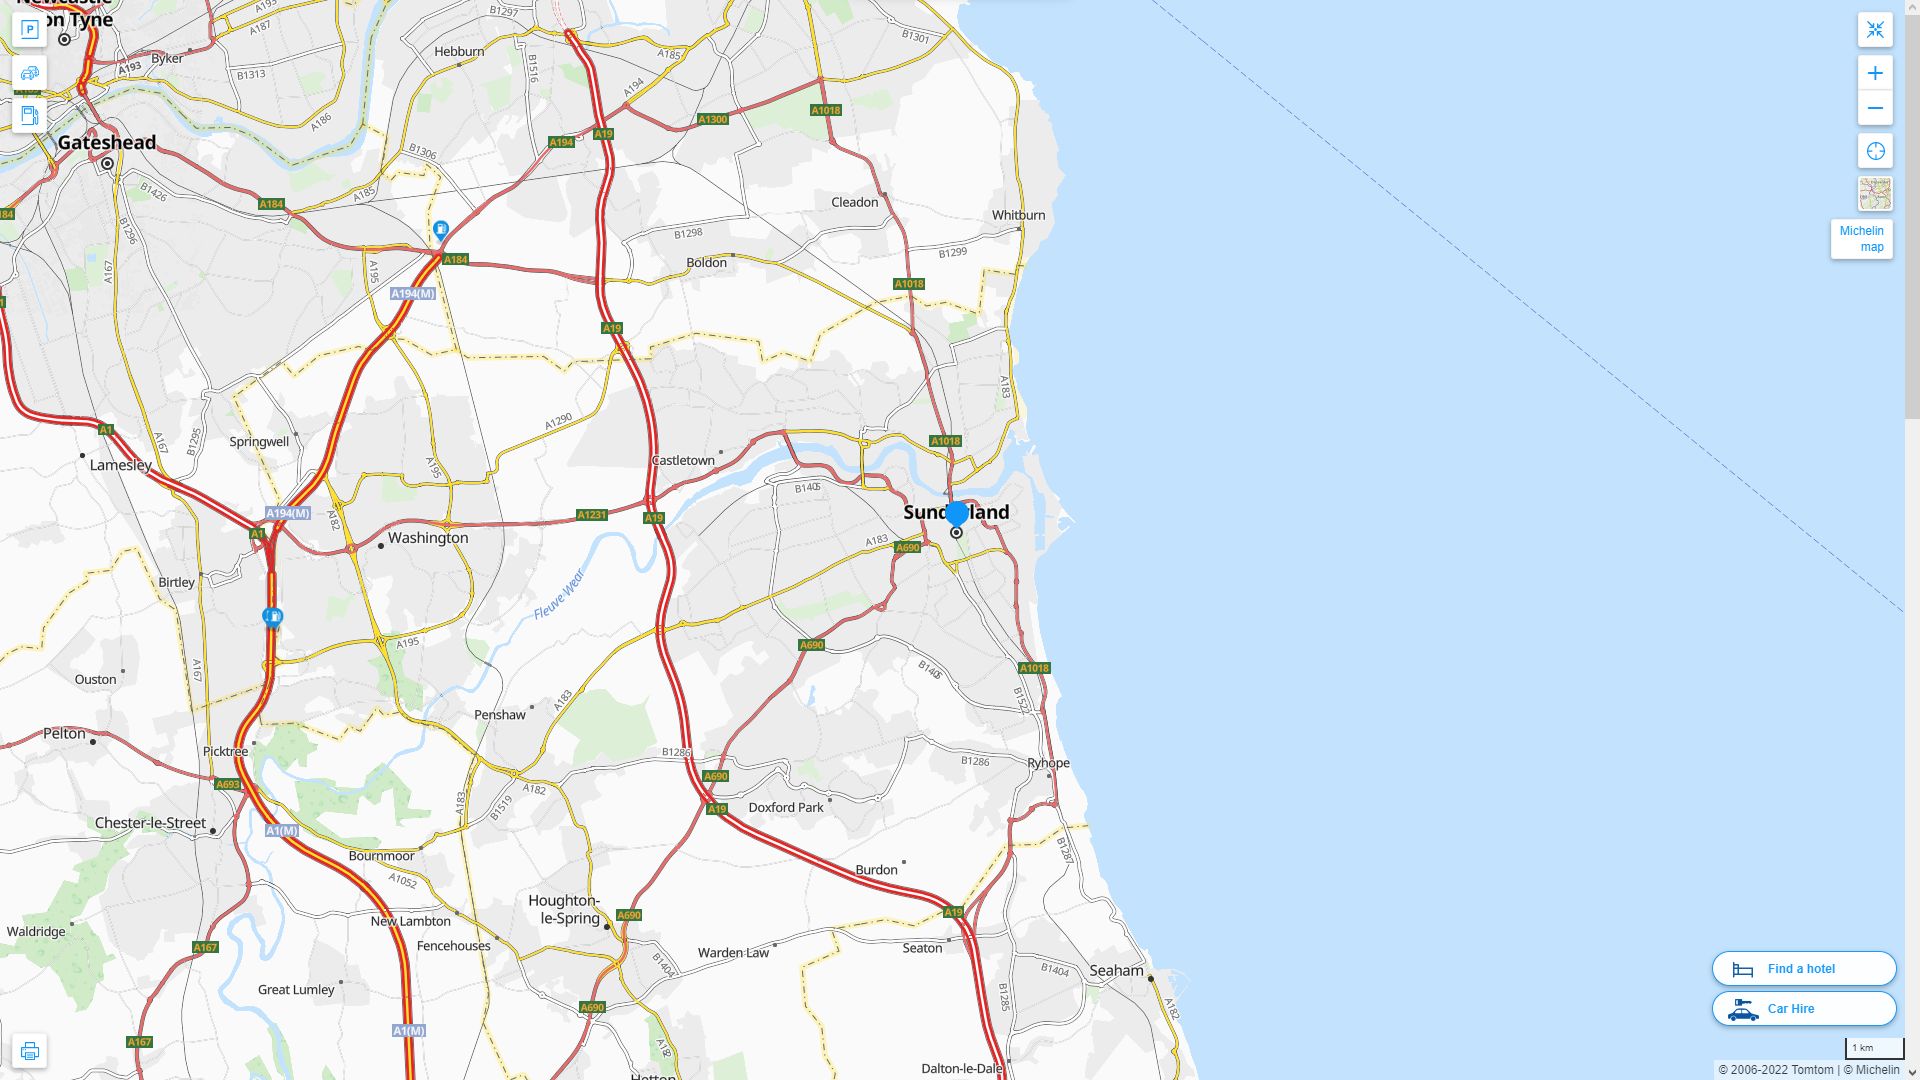 Sunderland Royaume Uni Autoroute et carte routiere